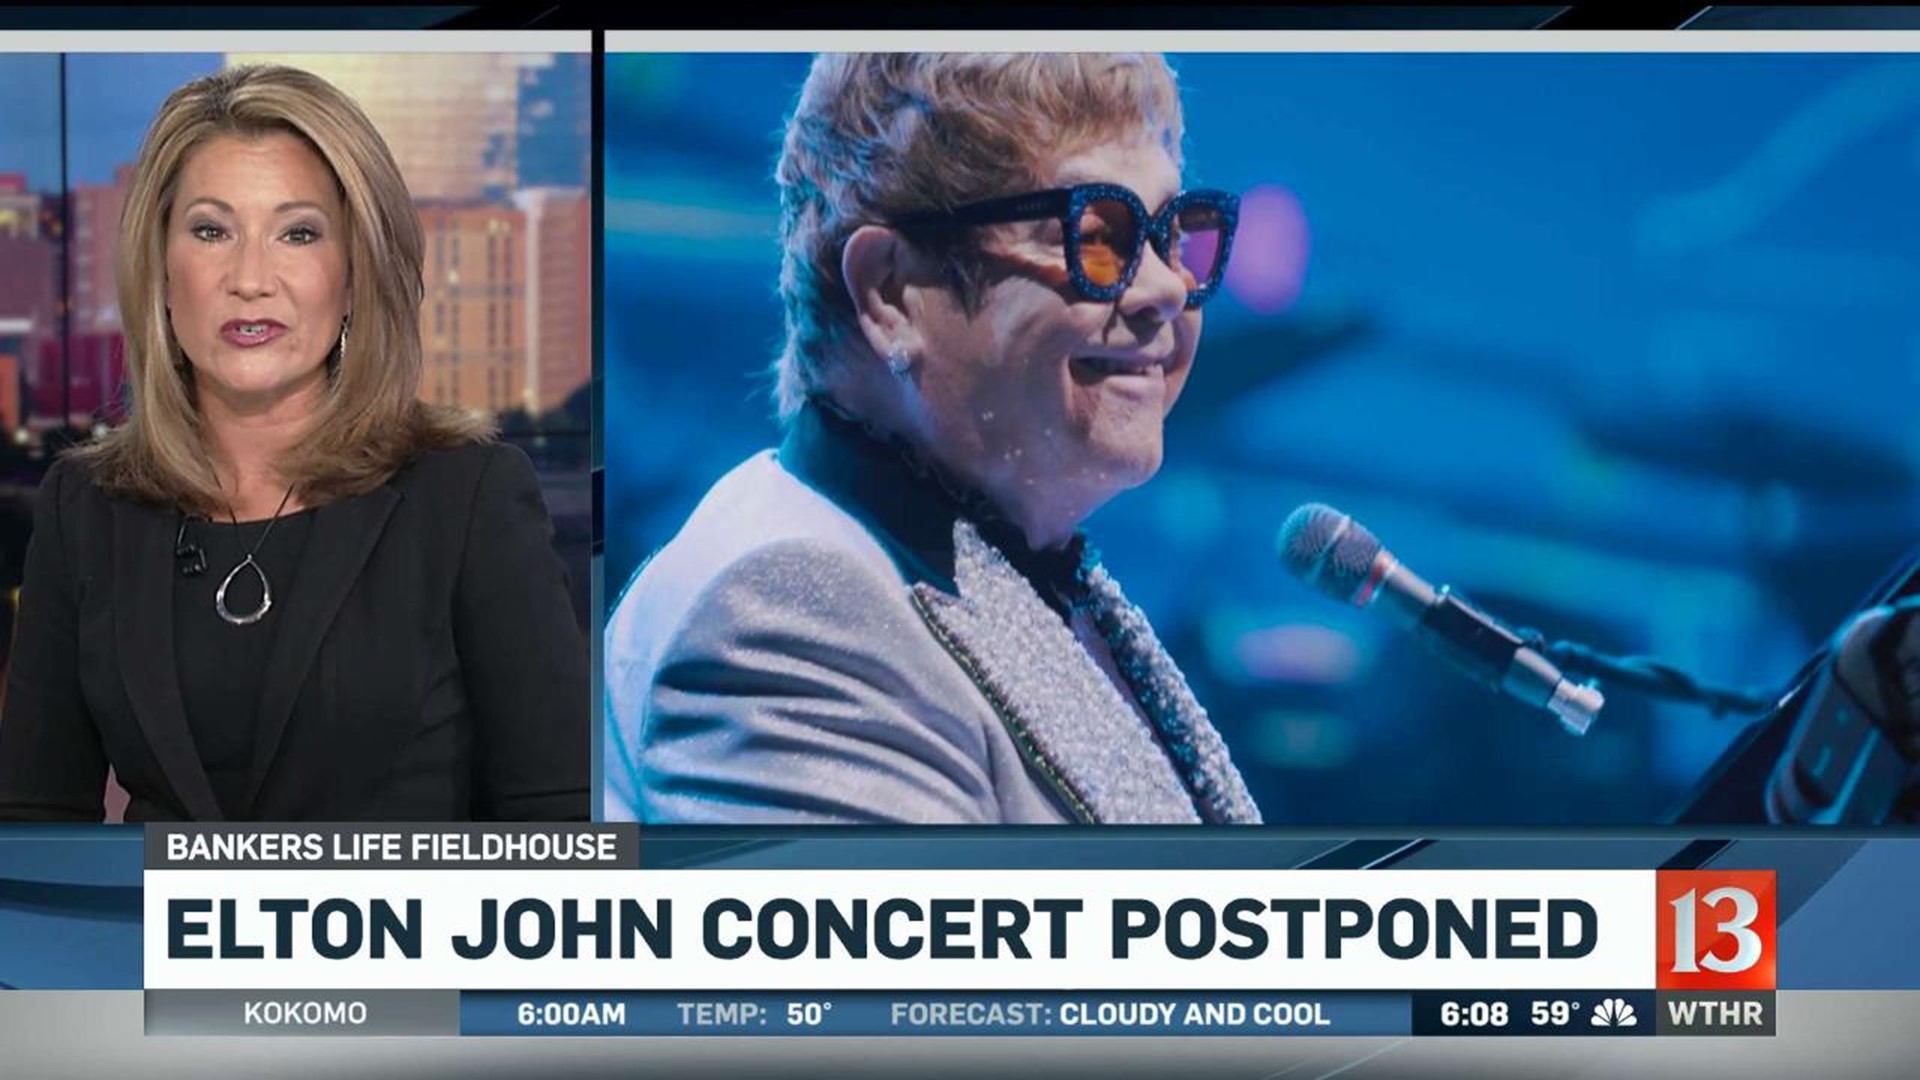 Elton John concert postponed